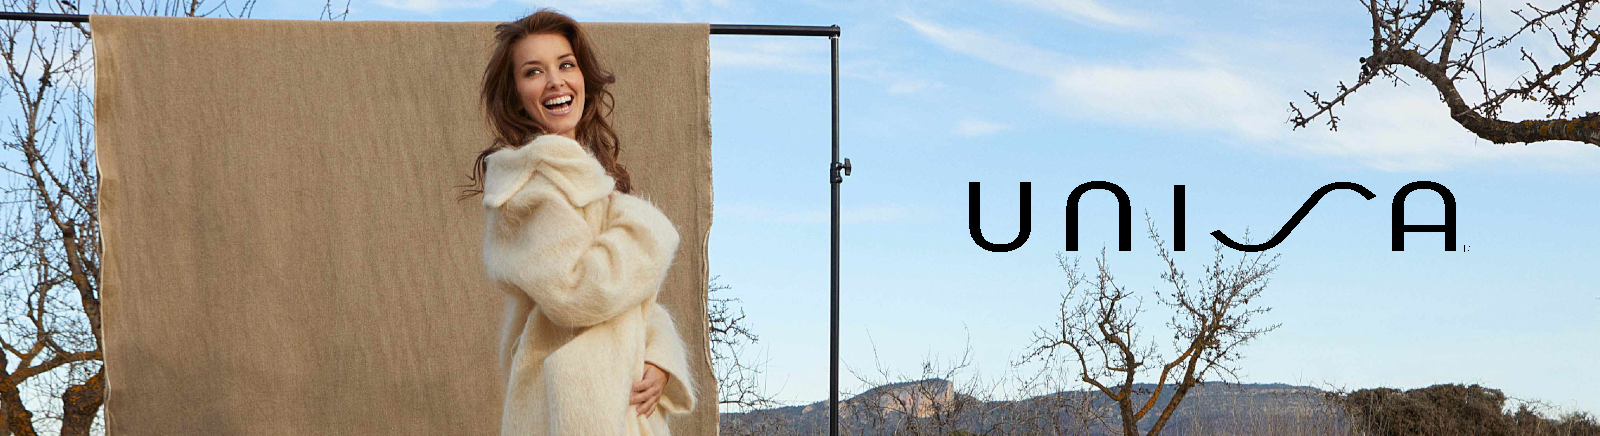 Unisa Brautschuhe für Damen im Online-Shop von GISY kaufen